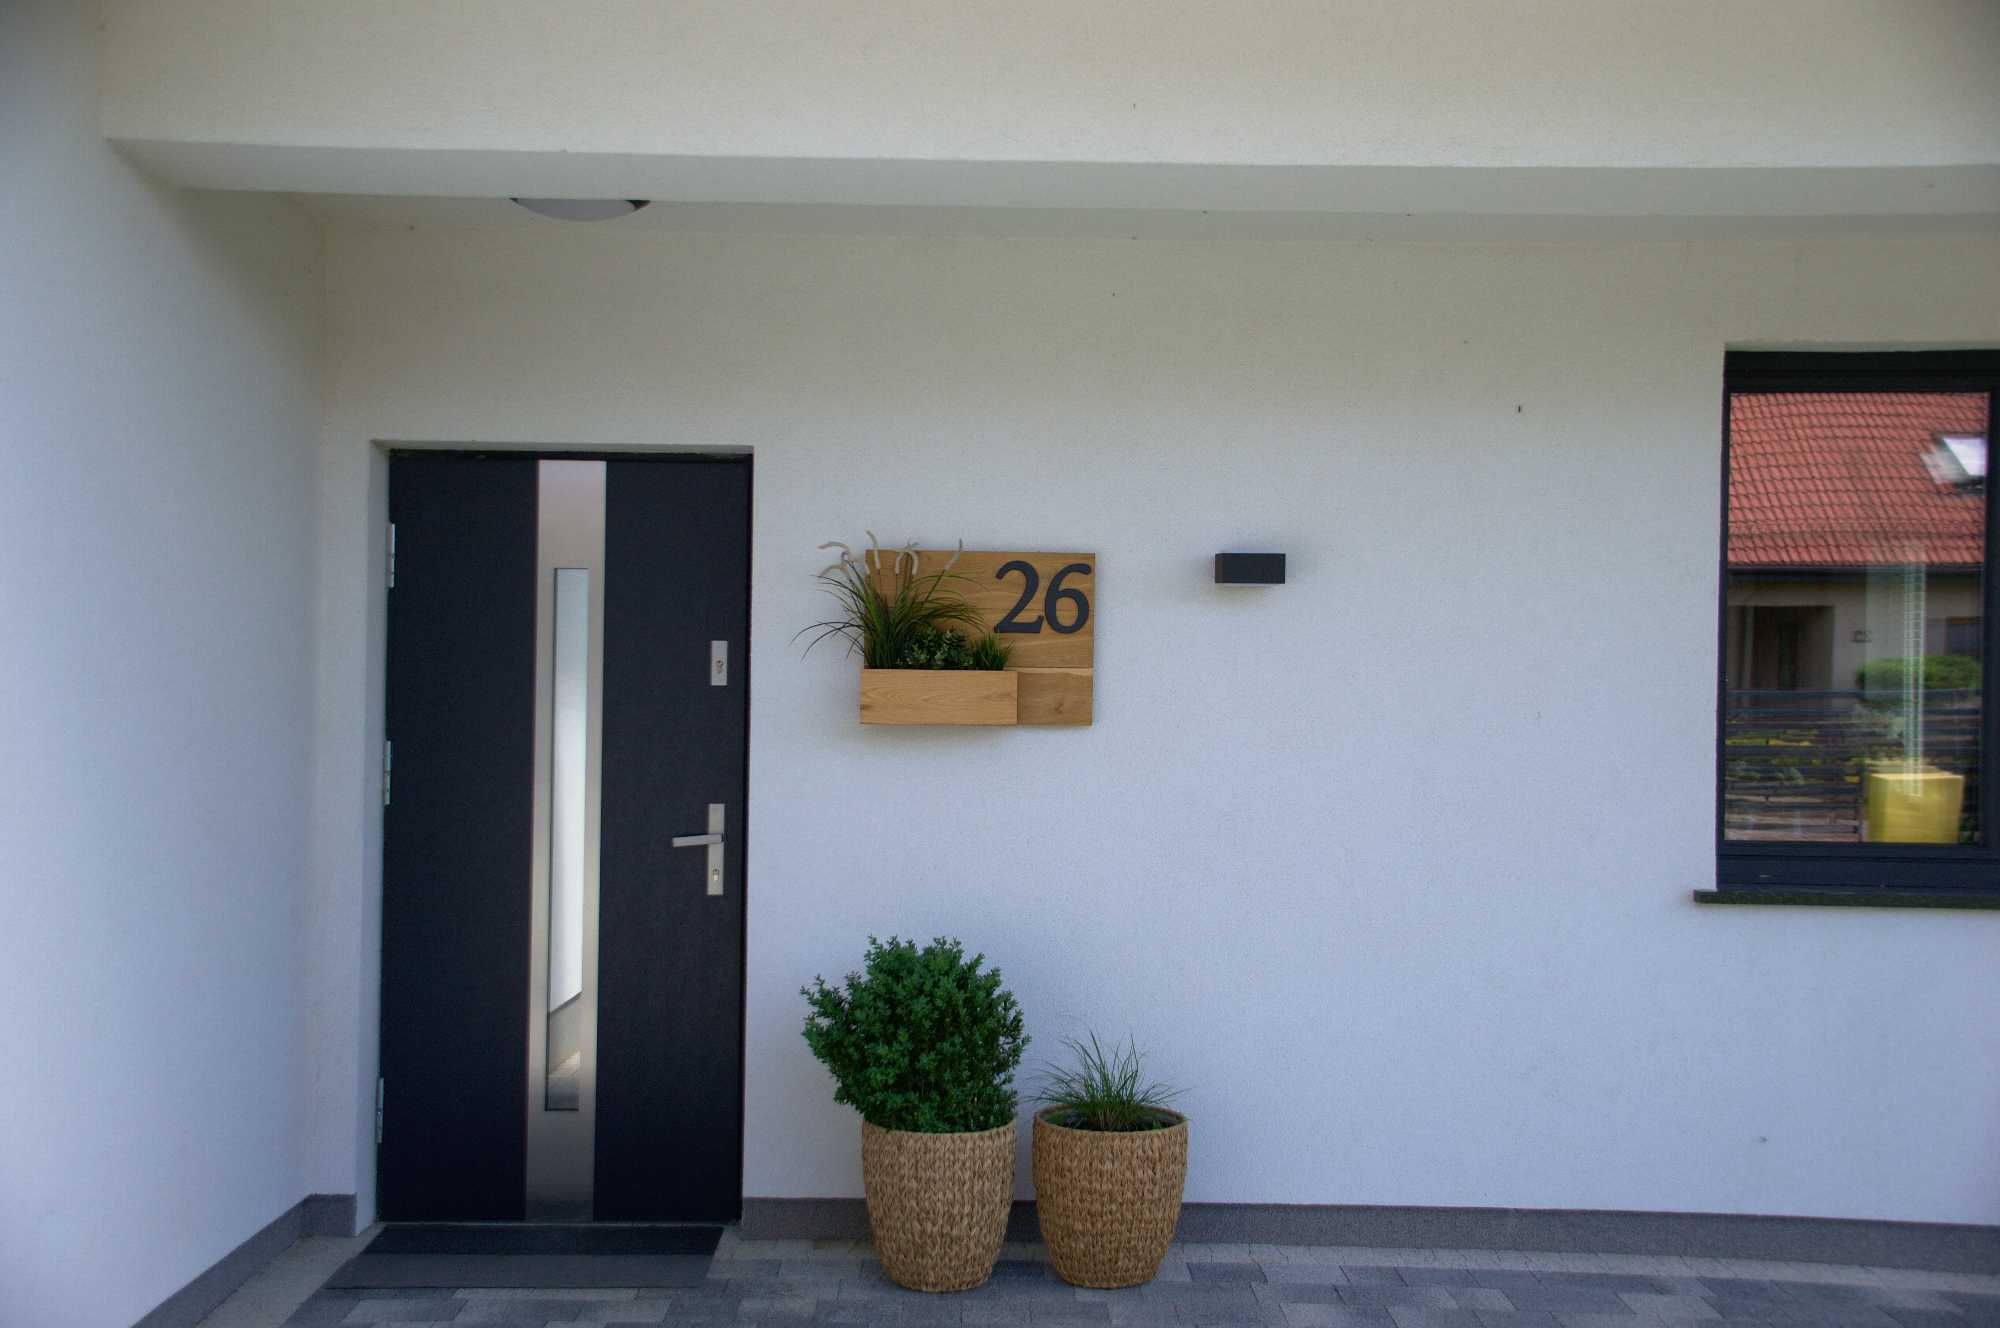 Drewniana tablica z numerem domu